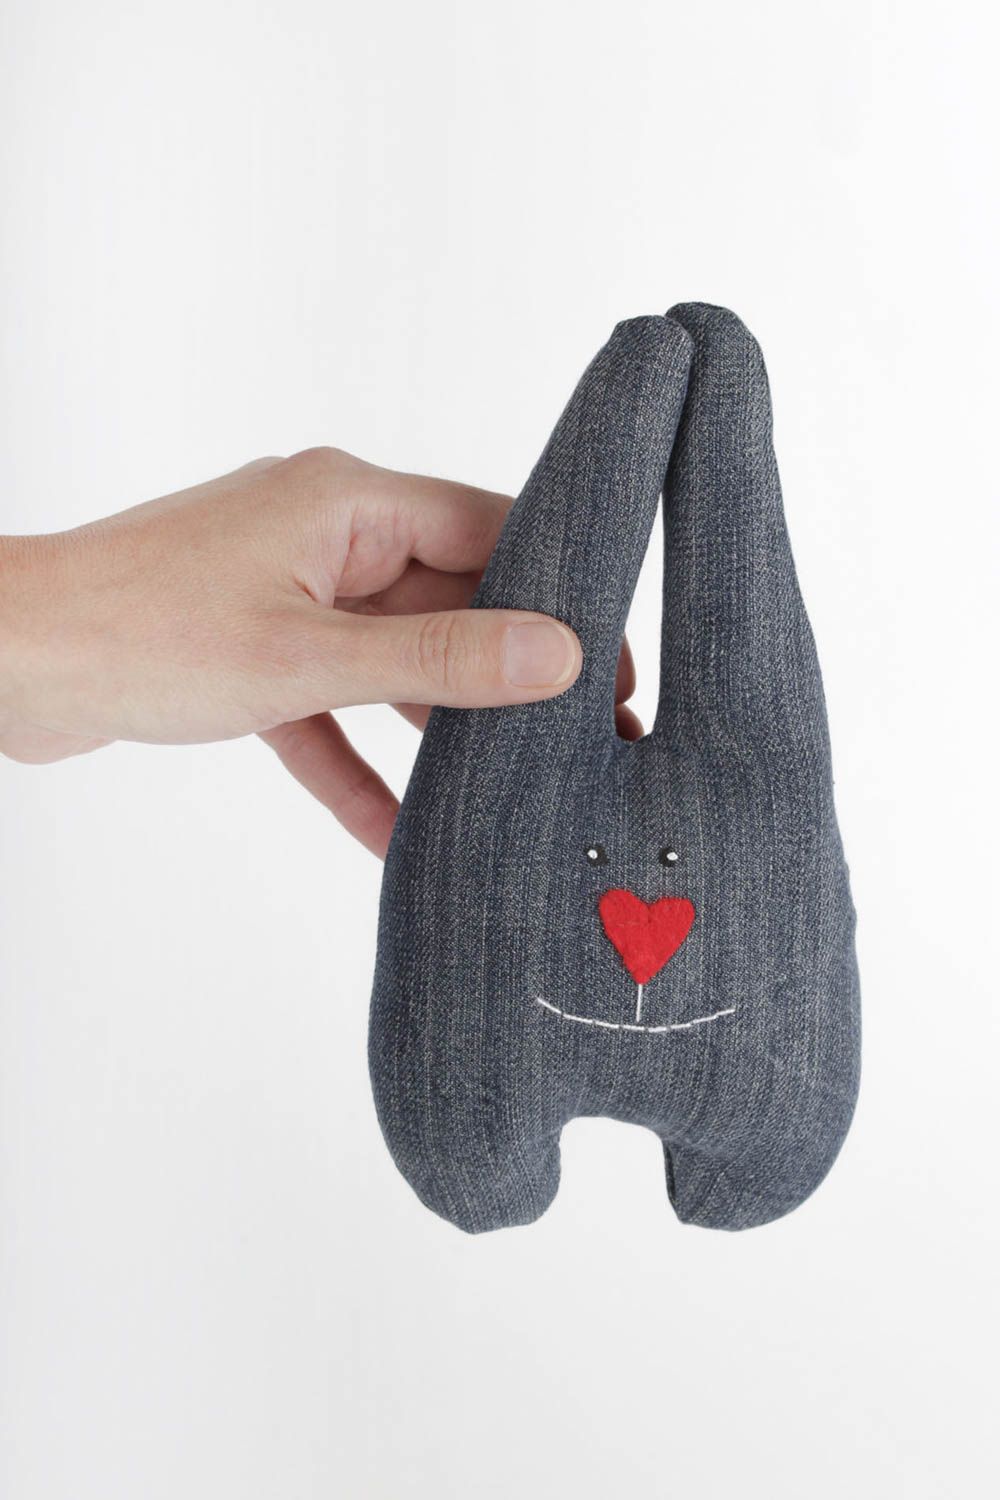 Игрушка ручной работы мягкая игрушка заяц из джинса интересный подарок фото 1